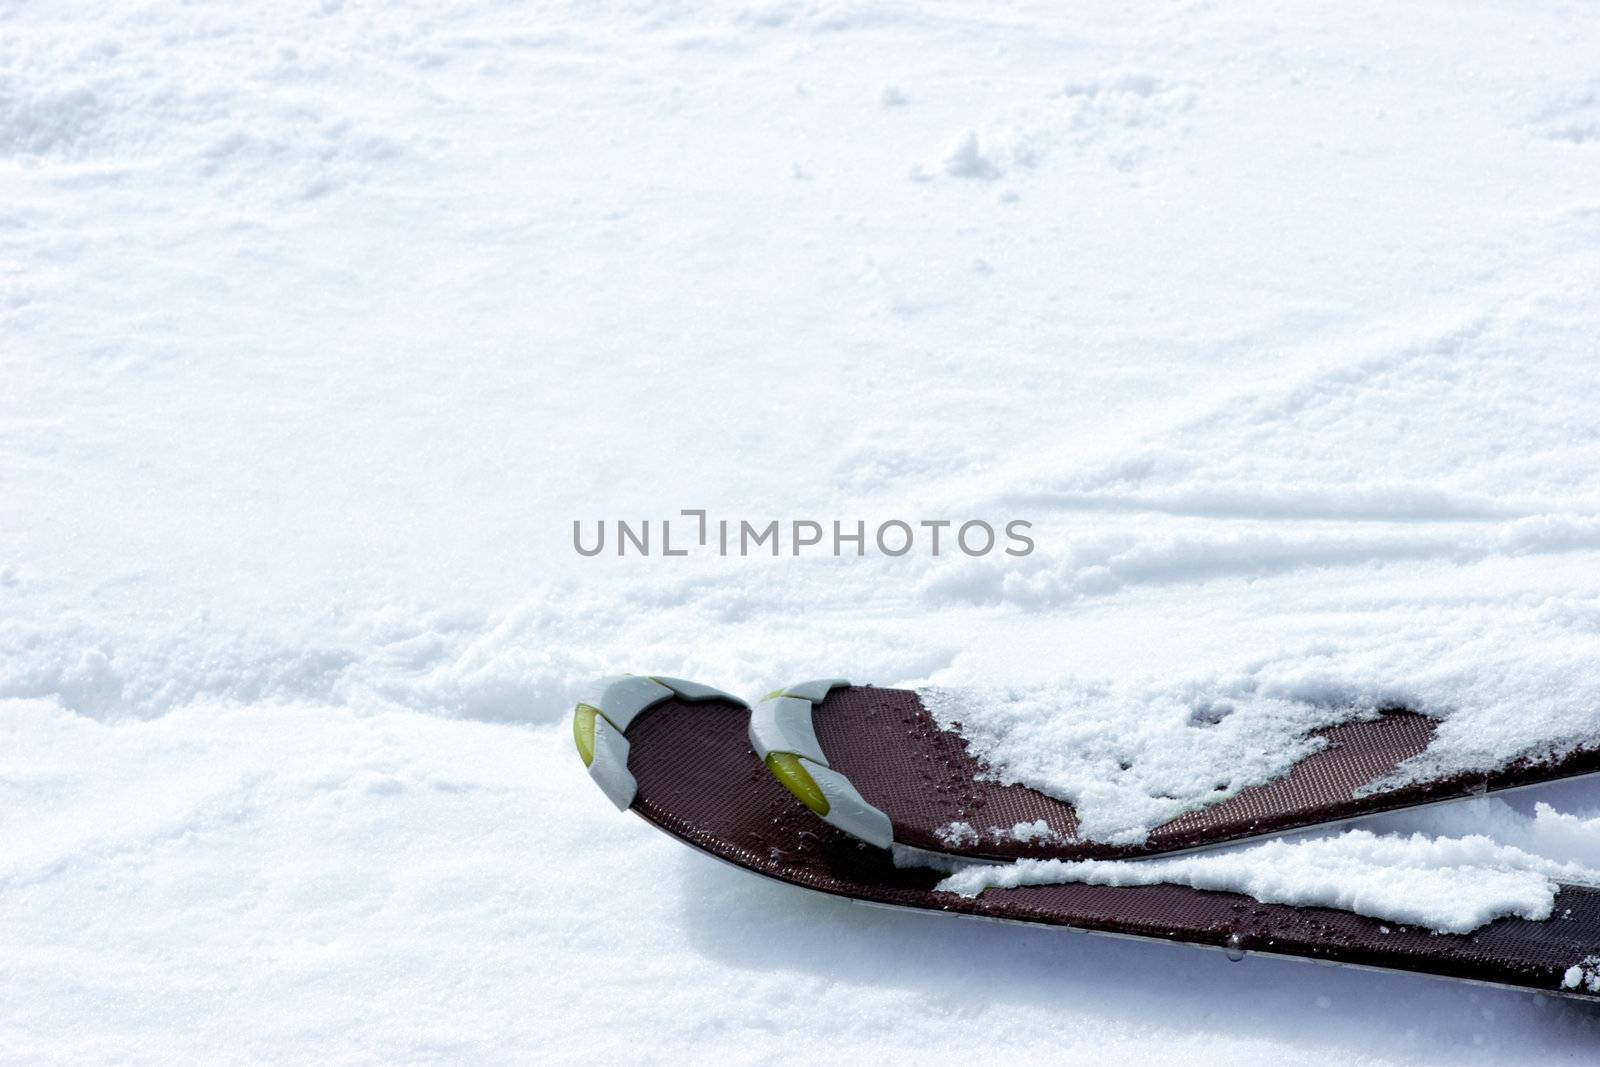 Skis on slope by naumoid